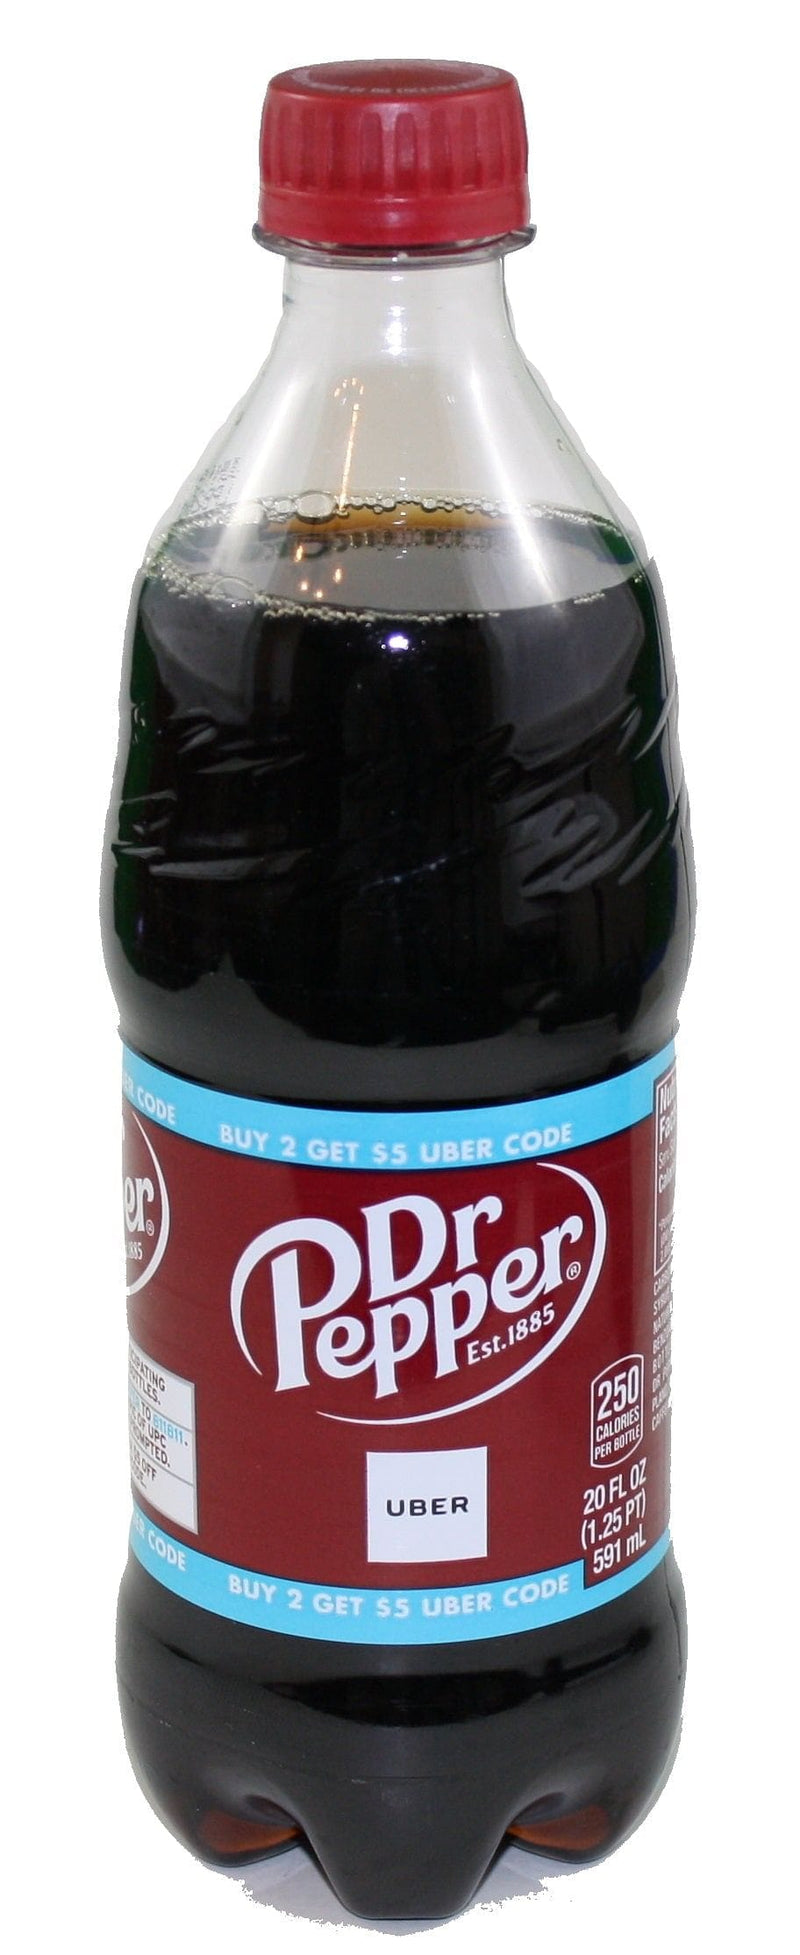 Dr Pepper, 1.25 L bottle, Cola